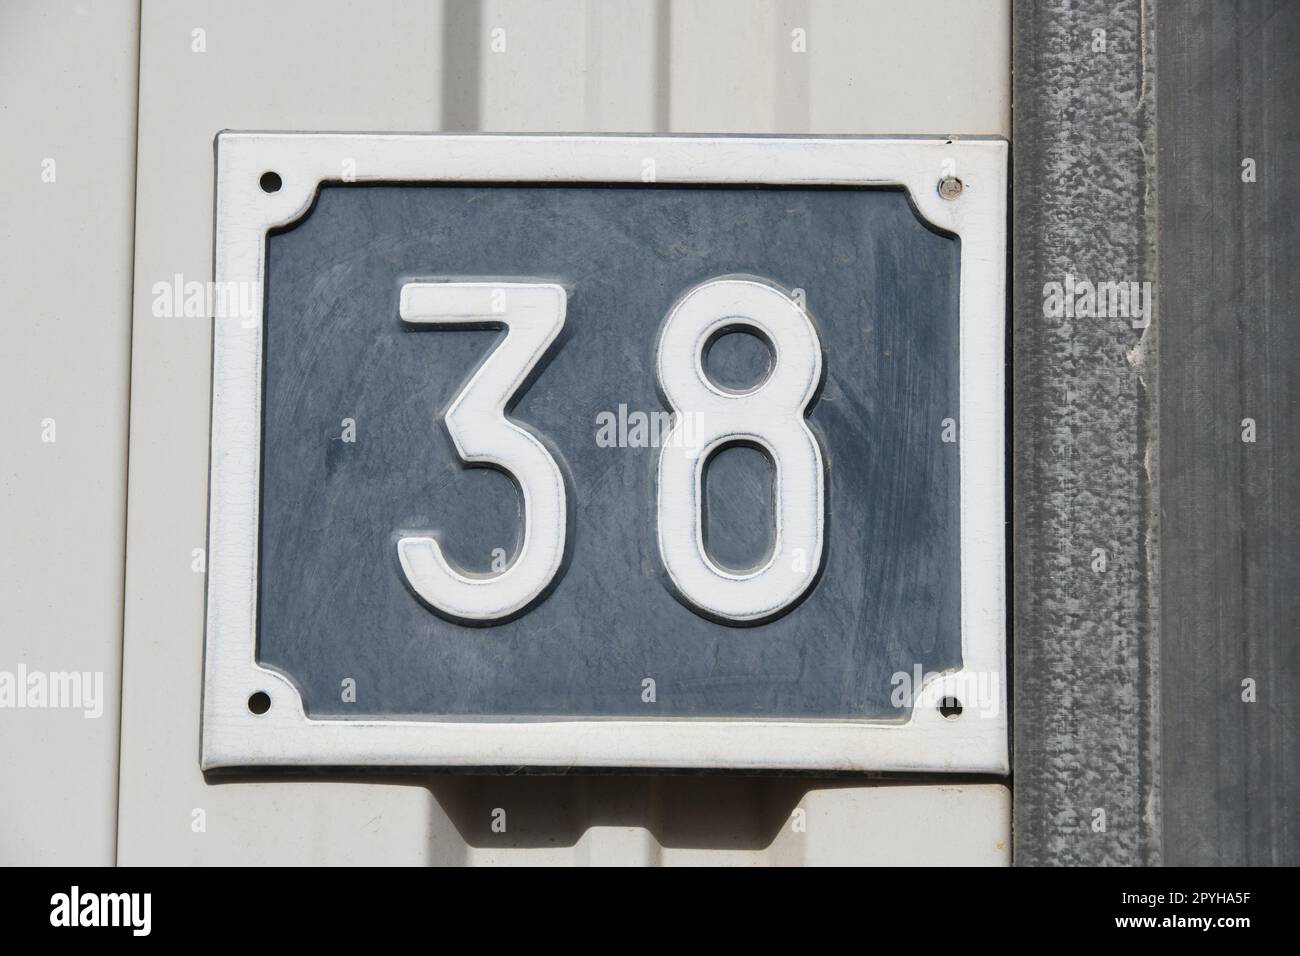 Numéro 38 sur une maison, la Nucia, province d'Alicante, Costa Blanca, Espagne Banque D'Images